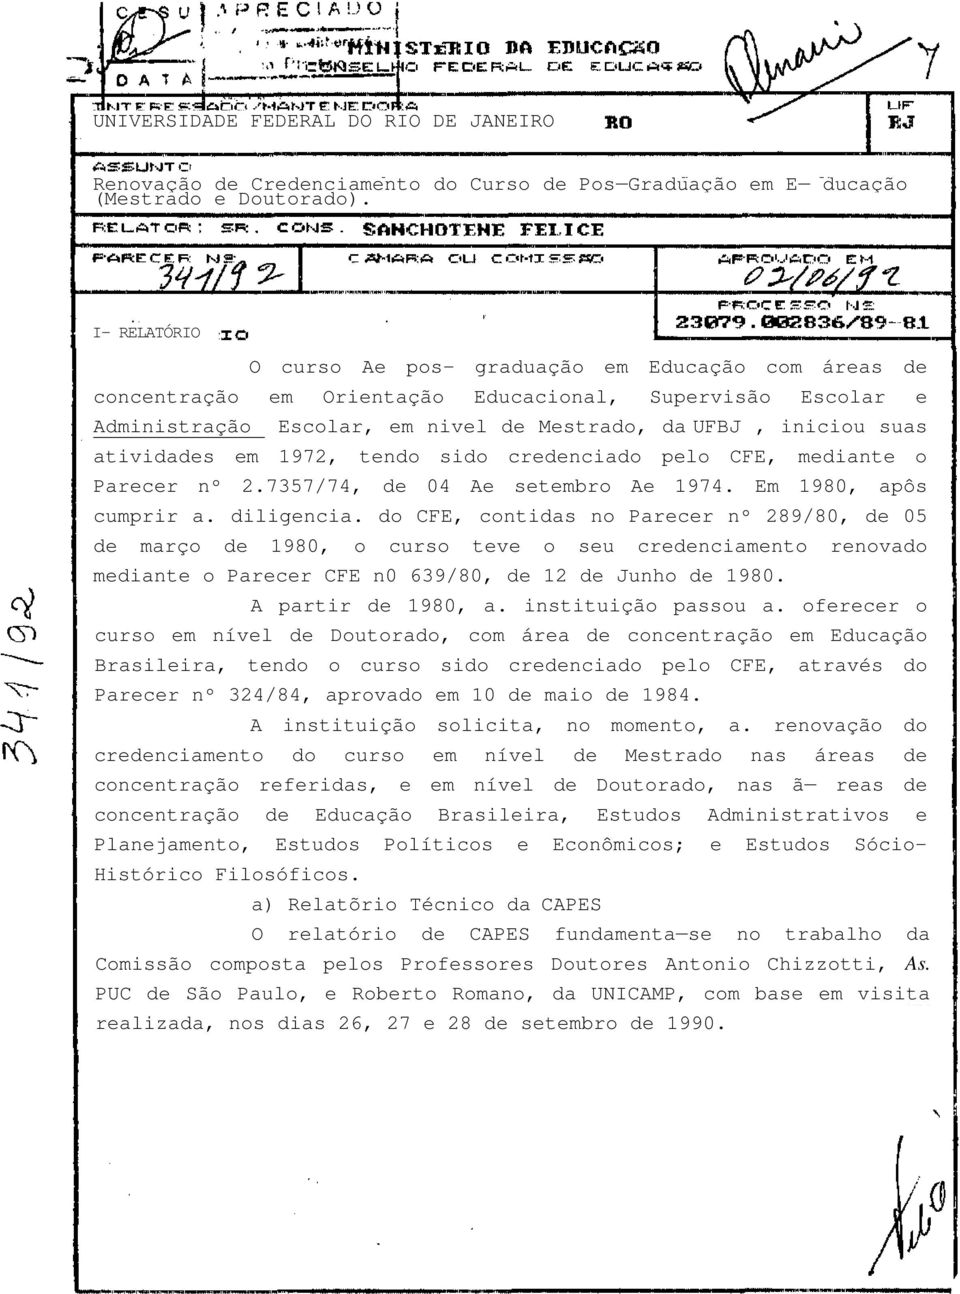 atividades em 1972, tendo sido credenciado pelo CFE, mediante o Parecer nº 2.7357/74, de 04 Ae setembro Ae 1974. Em 1980, apôs cumprir a. diligencia.